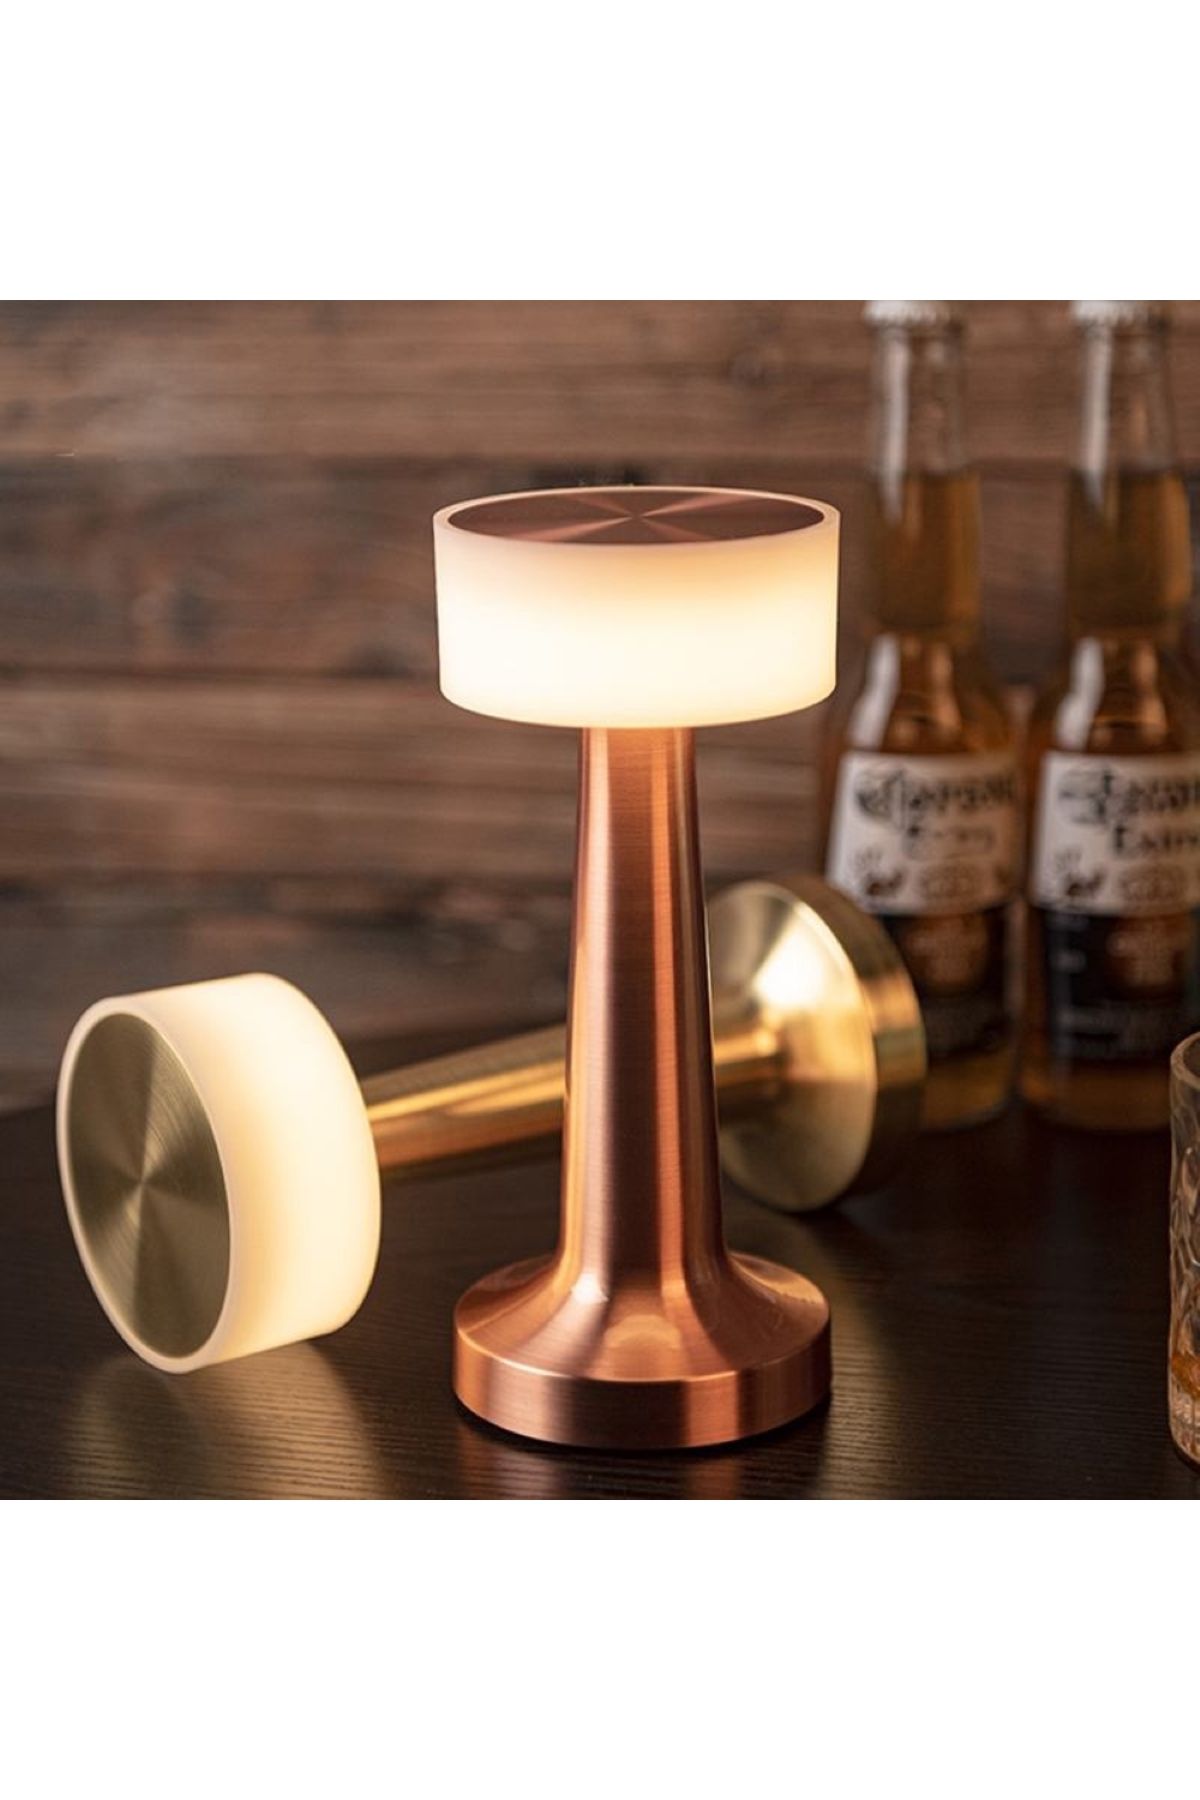 MENFRY Masa Üstü Model Şarjlı Dokunmatik 3 Farklı Işık Modlu Ve Kısmalı Akrilik Aydınlatma Lamba LED